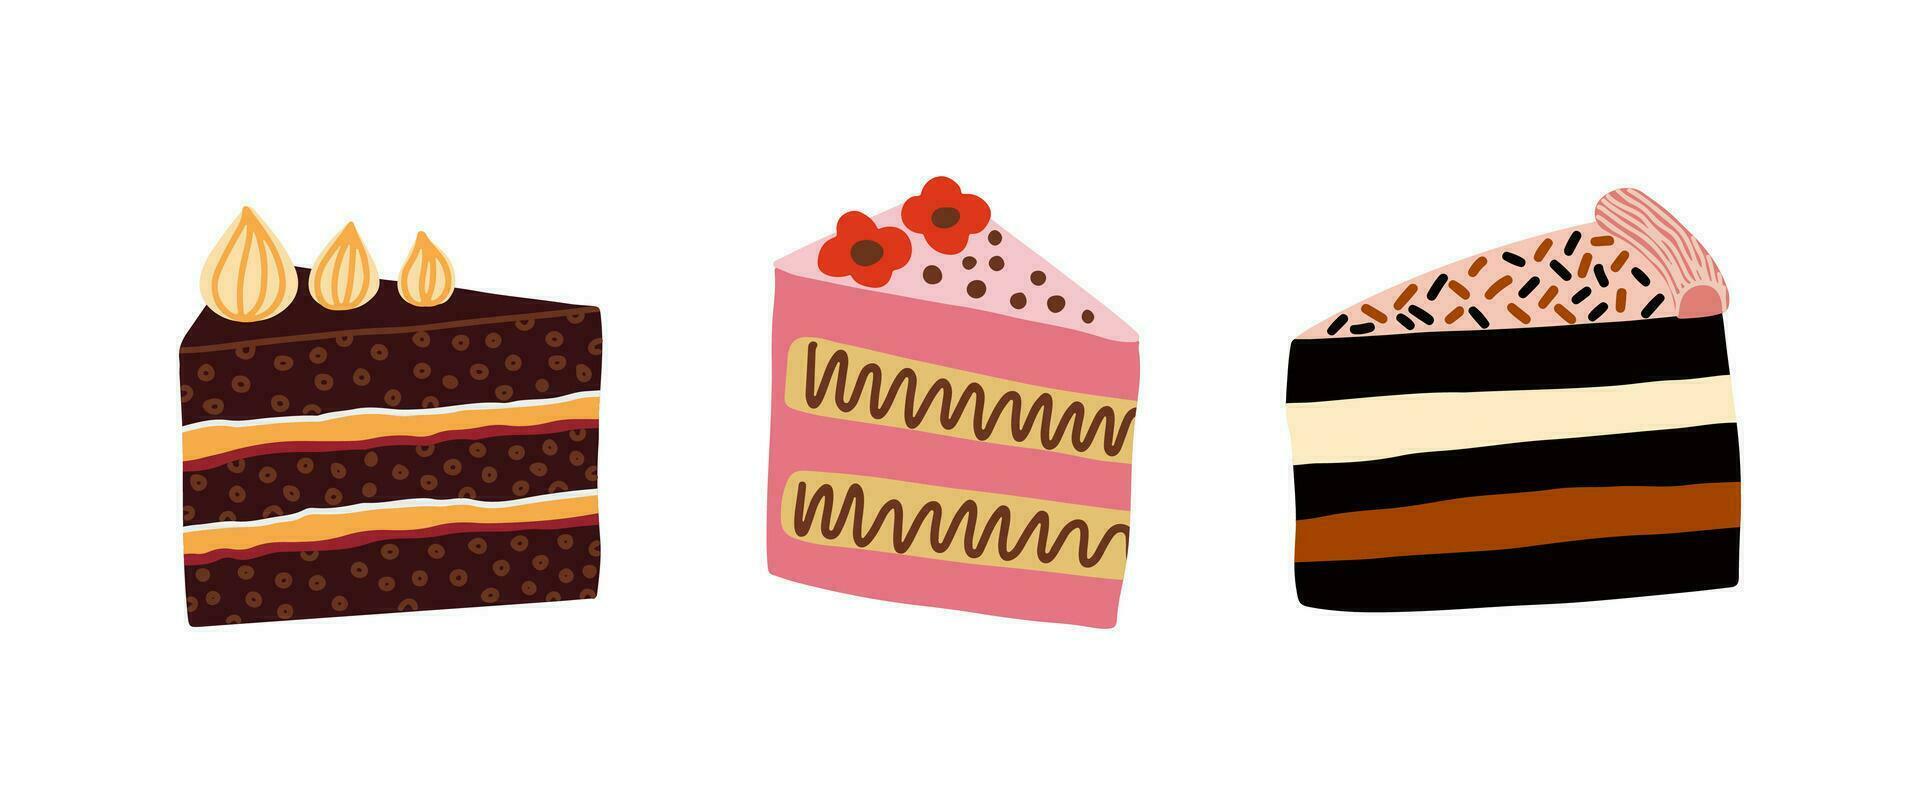 reeks van verschillend taart plakjes met room. verjaardag taart stukken, aardbei, chocola taarten. vector illustratie.